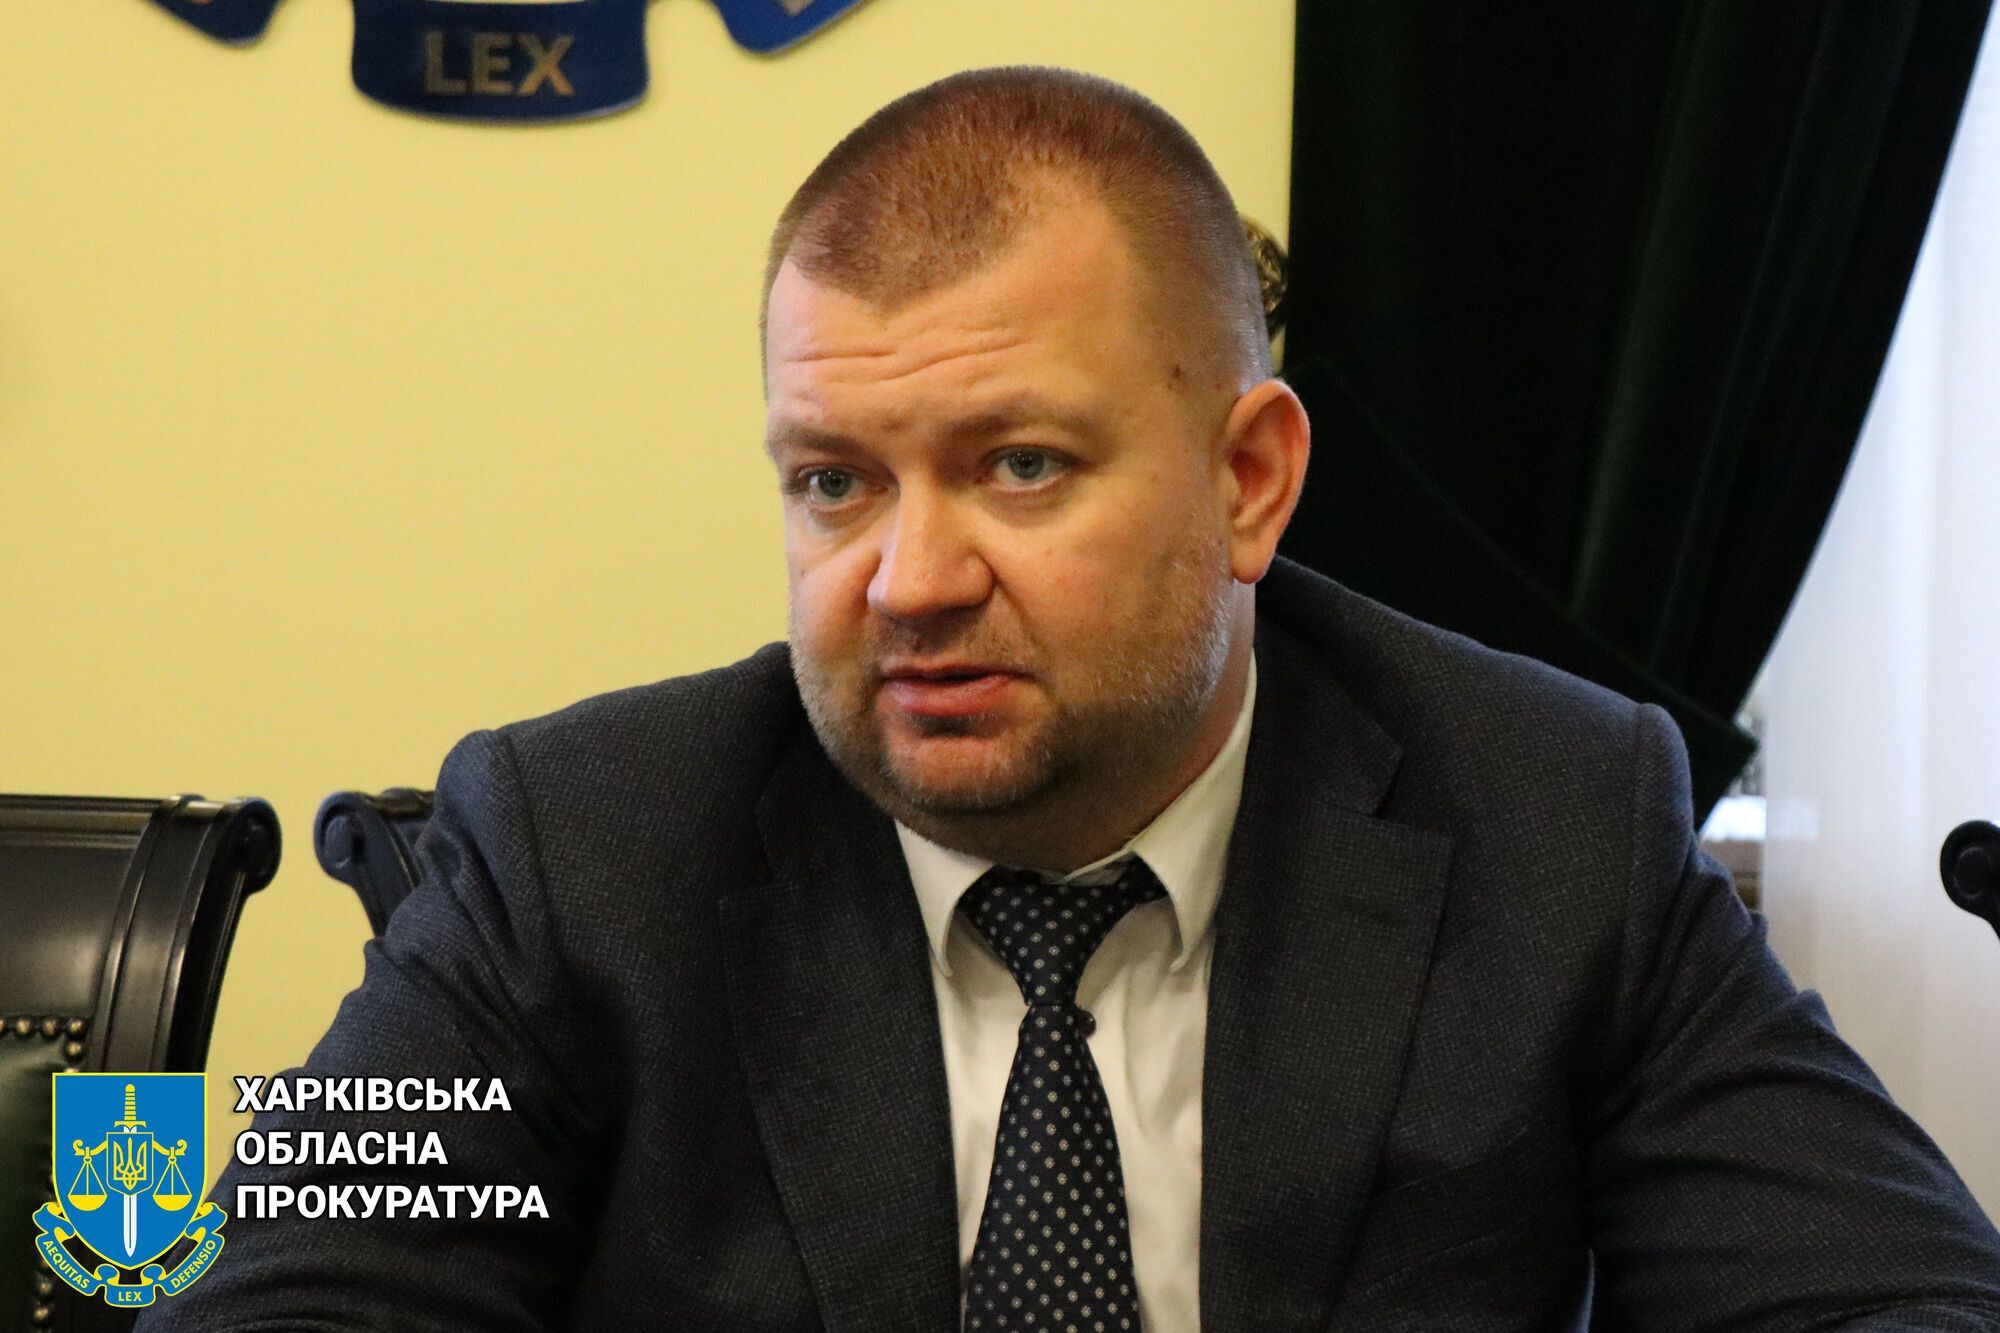 «Наші двері завжди відкриті для співпраці», —  керівник обласної прокуратури Фільчаков (ФОТО)